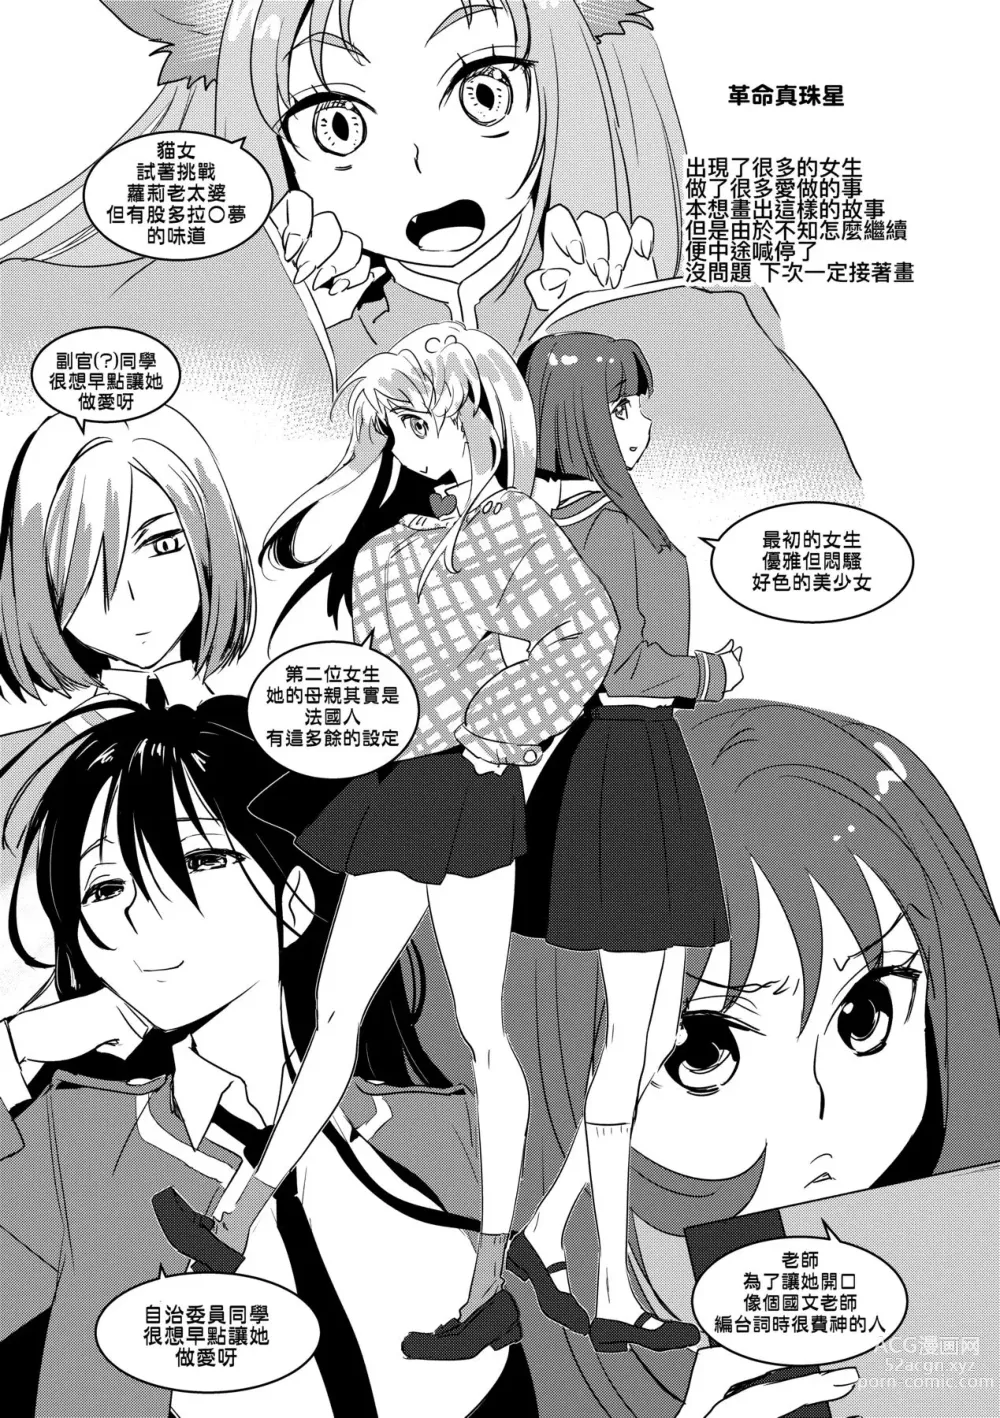 Page 212 of manga Echiechi JK Houimou (decensored)